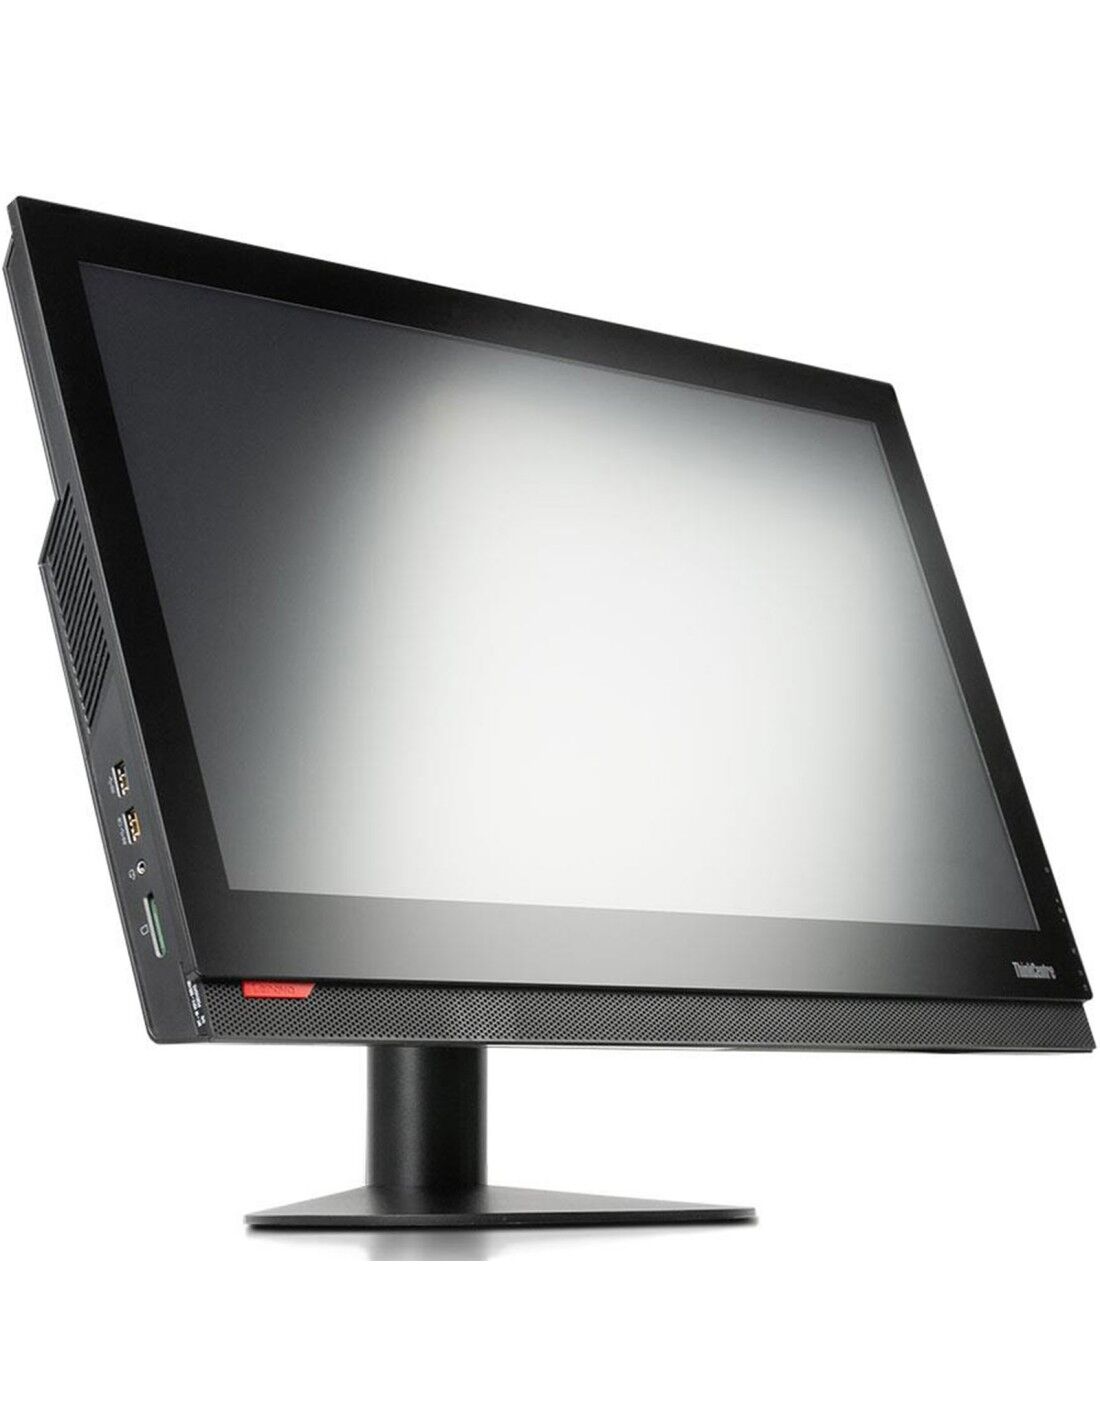 PC Computer All-In-One Ricondizionato Lenovo ThinkCentre M900z 23.8" Intel i5-6400T Ram 8GB SSD 240GB Webcam Grado B